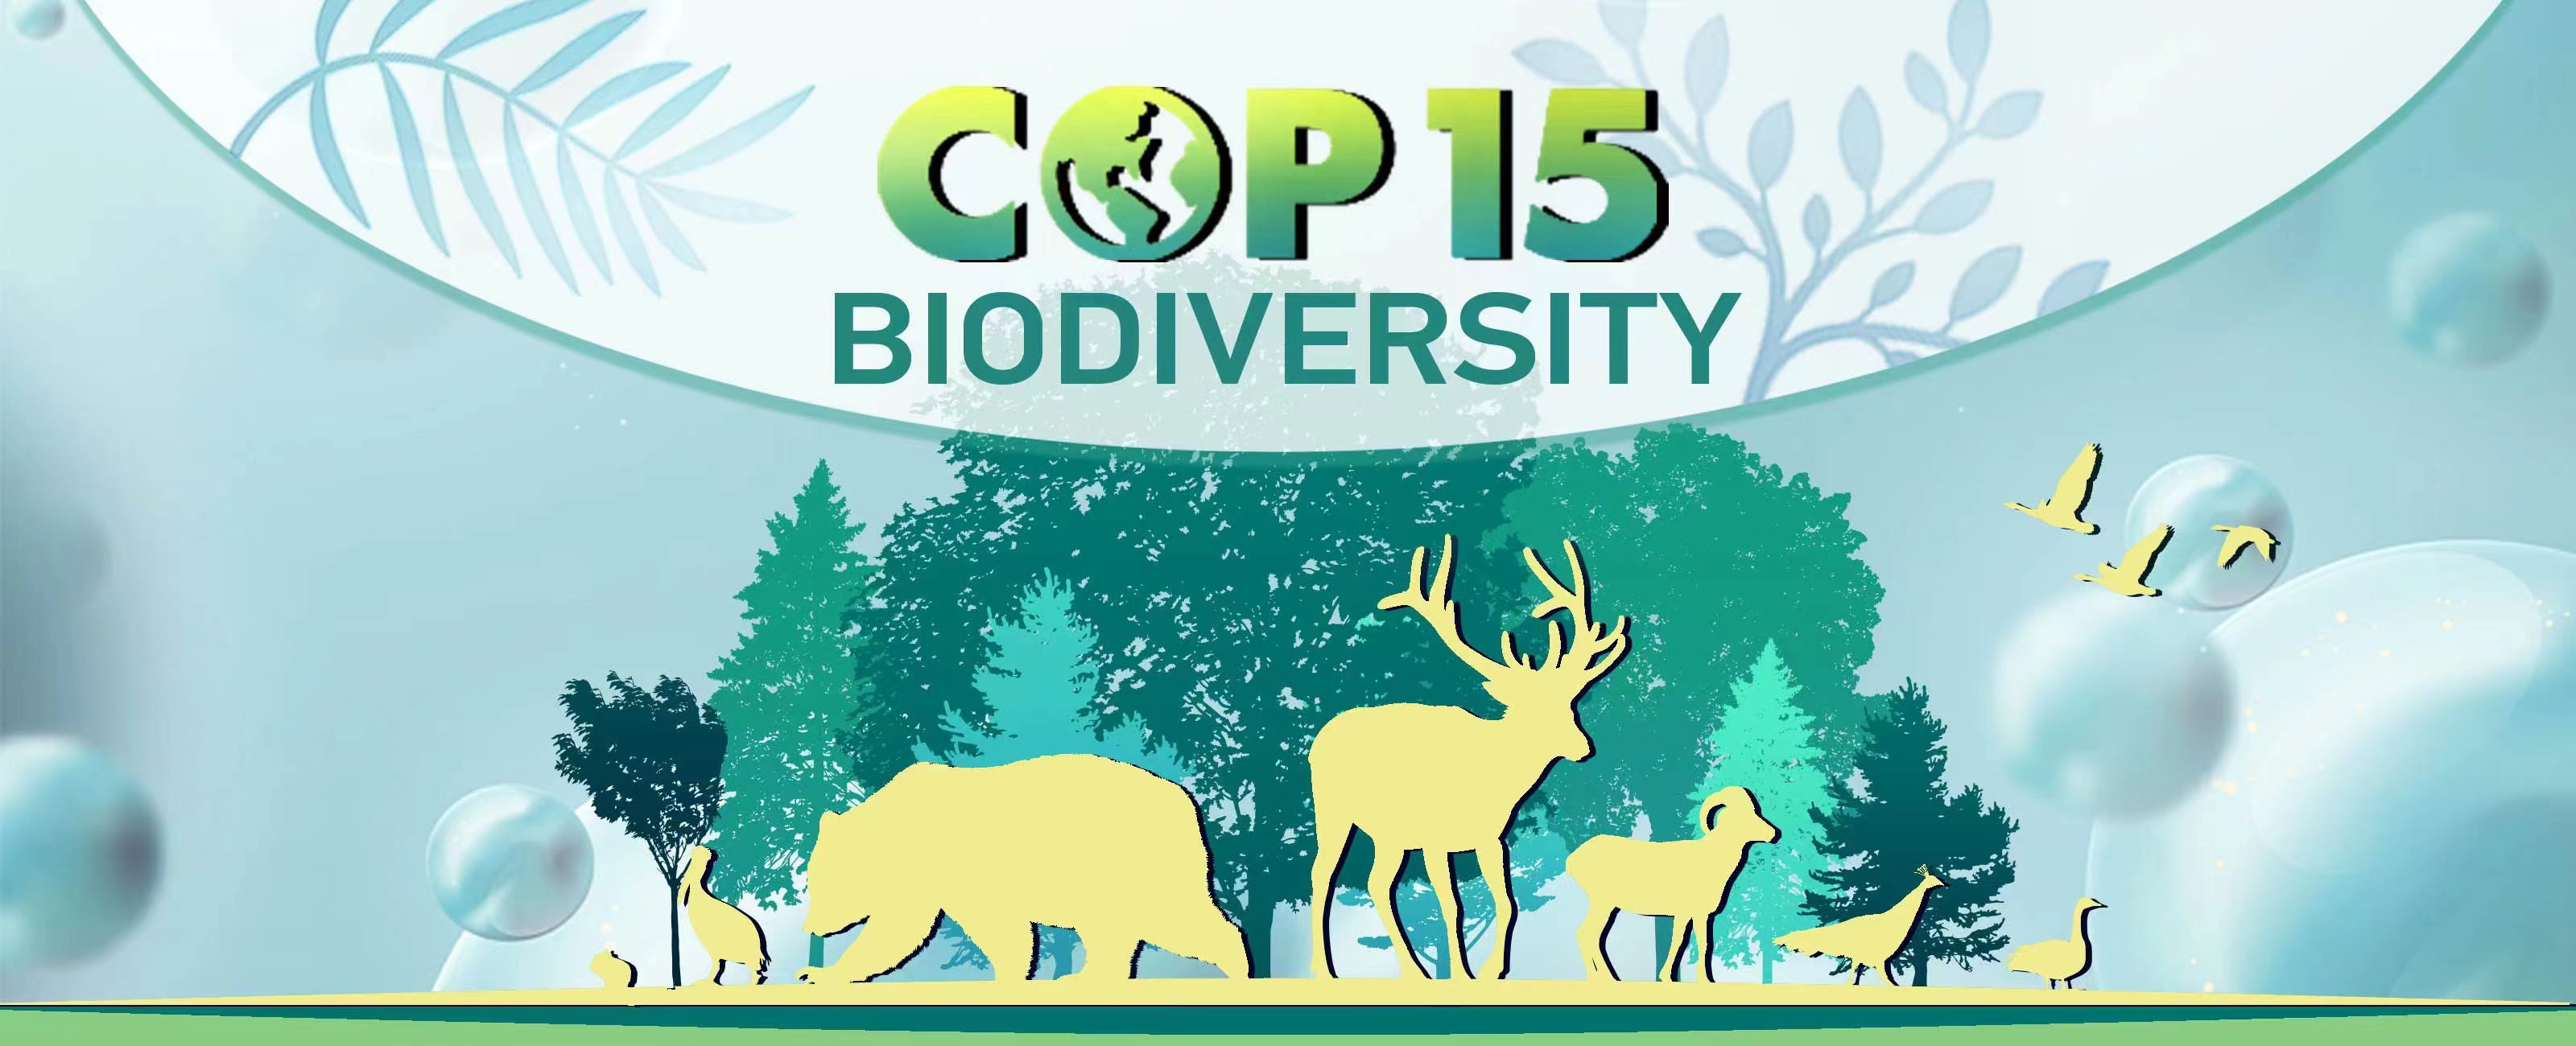 COP15 